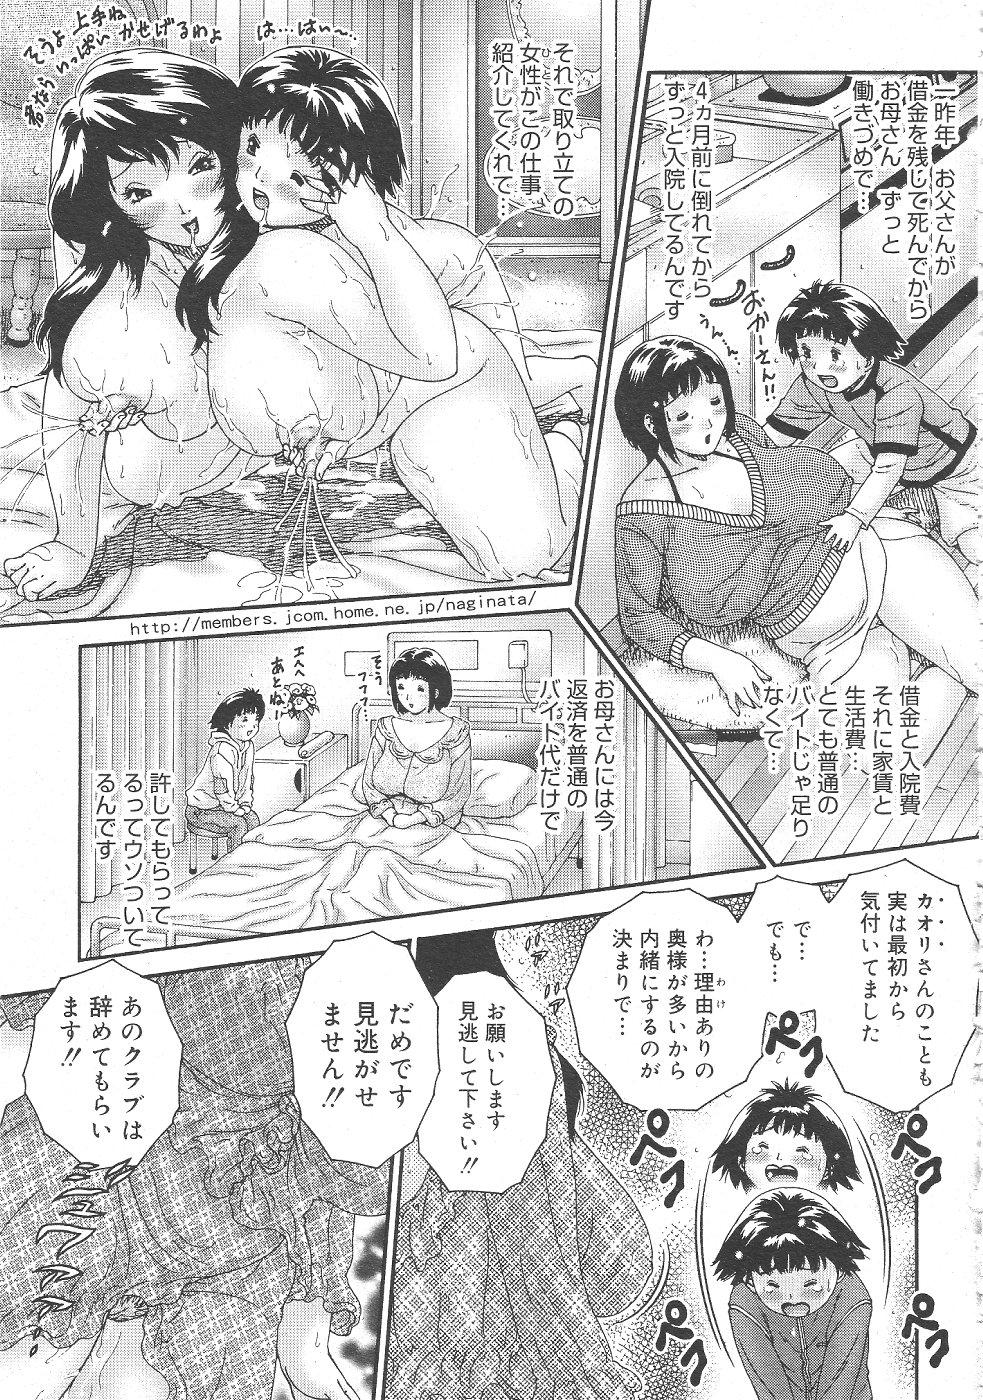 Gekkan Comic Muga 2004-06 Vol.10 192